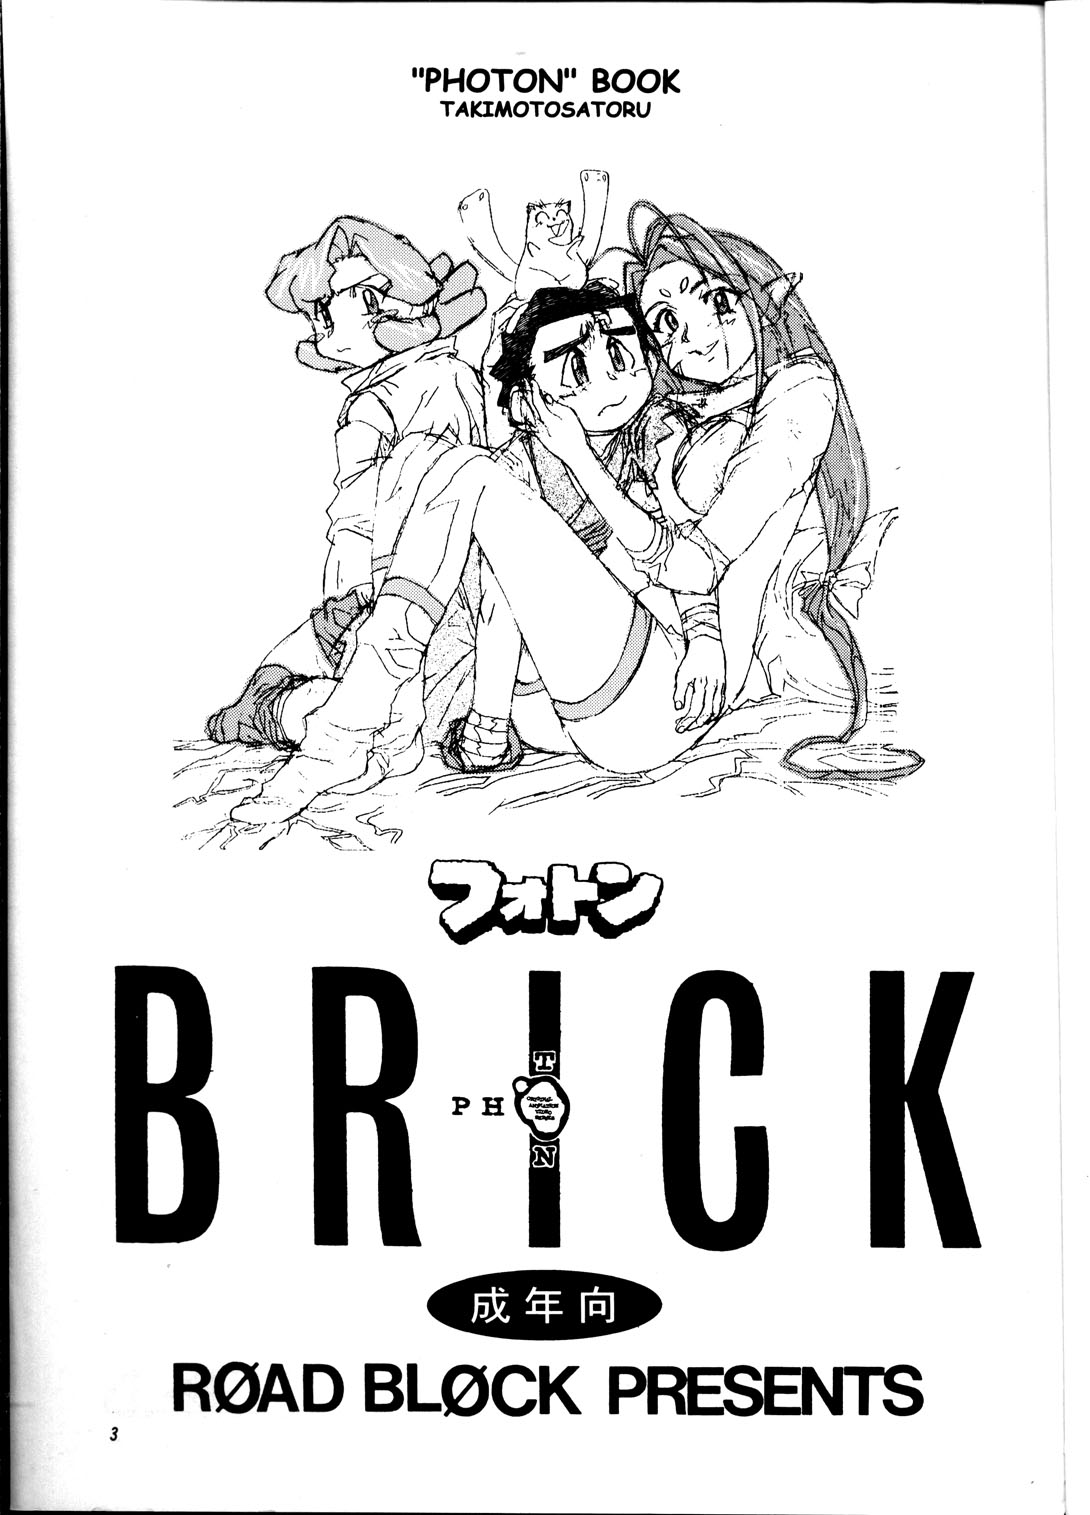 [ROAD BLOCK (滝本悟)] Brick (フォトン)